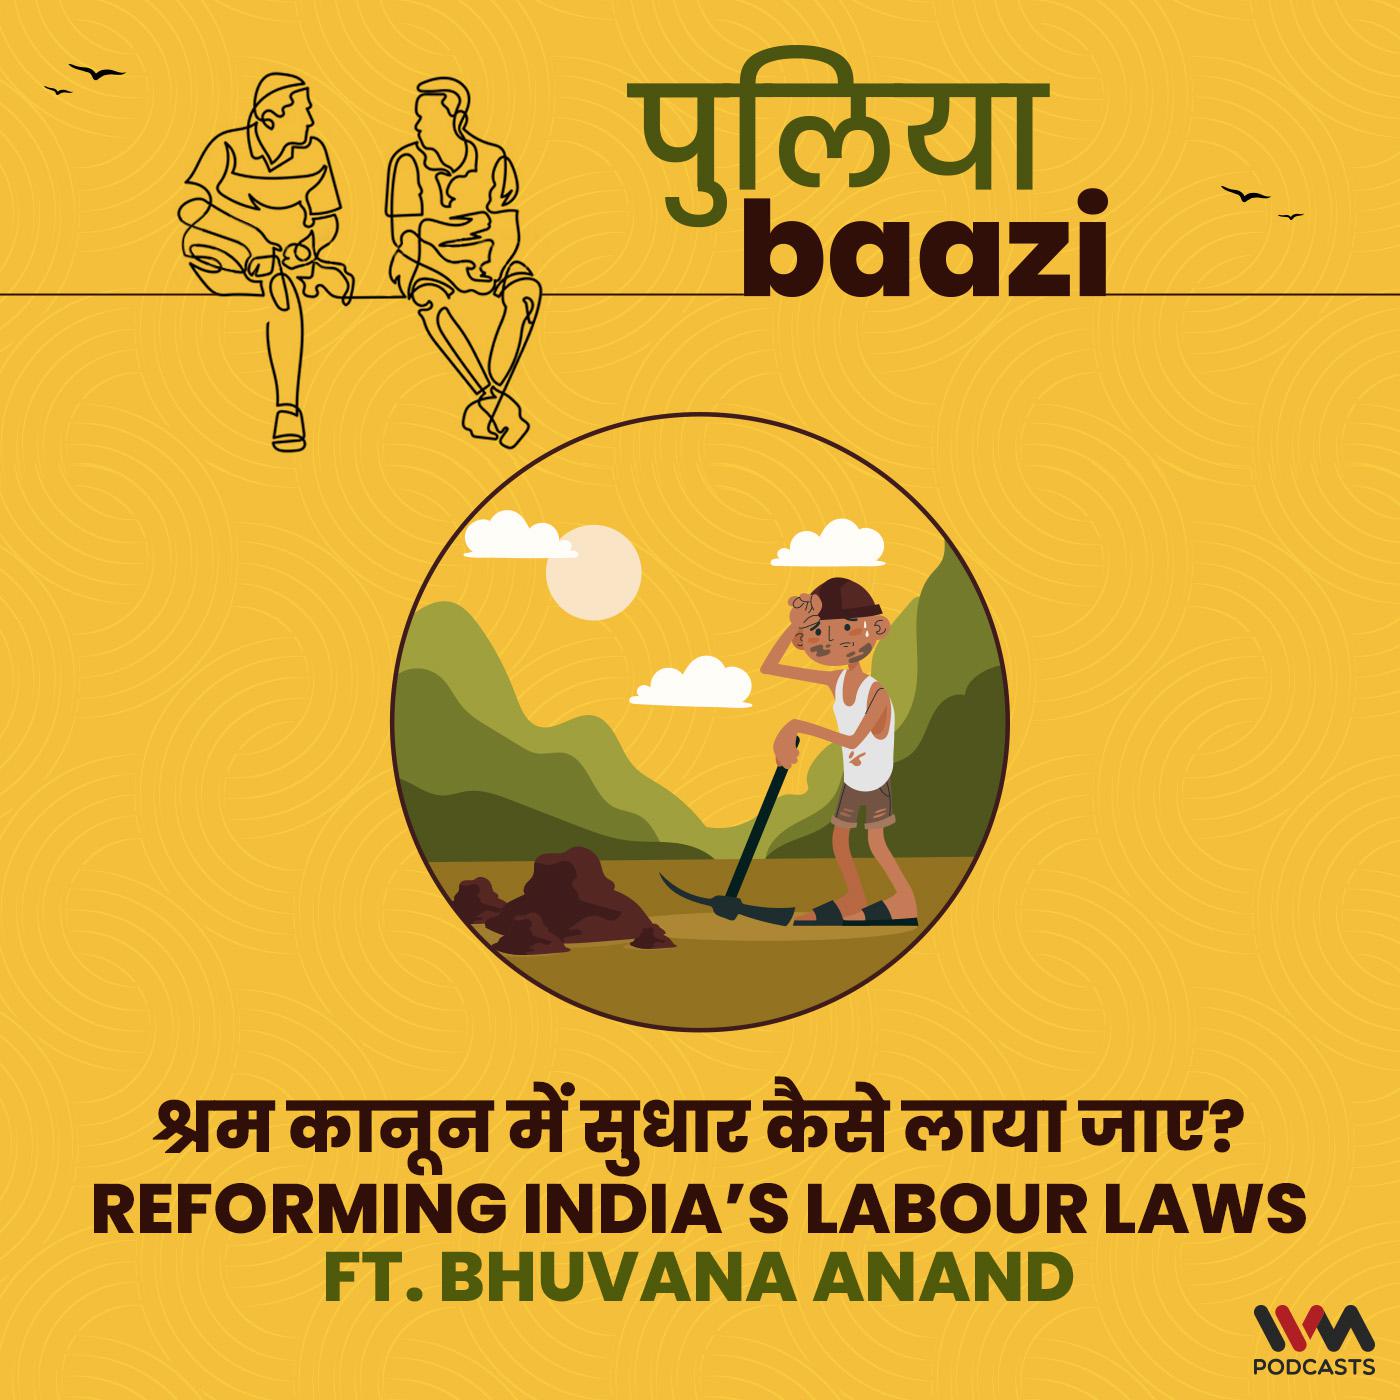 श्रम कानून में सुधार कैसे लाया जाए? Reforming India’s Labour Laws ft. Bhuvana Anand